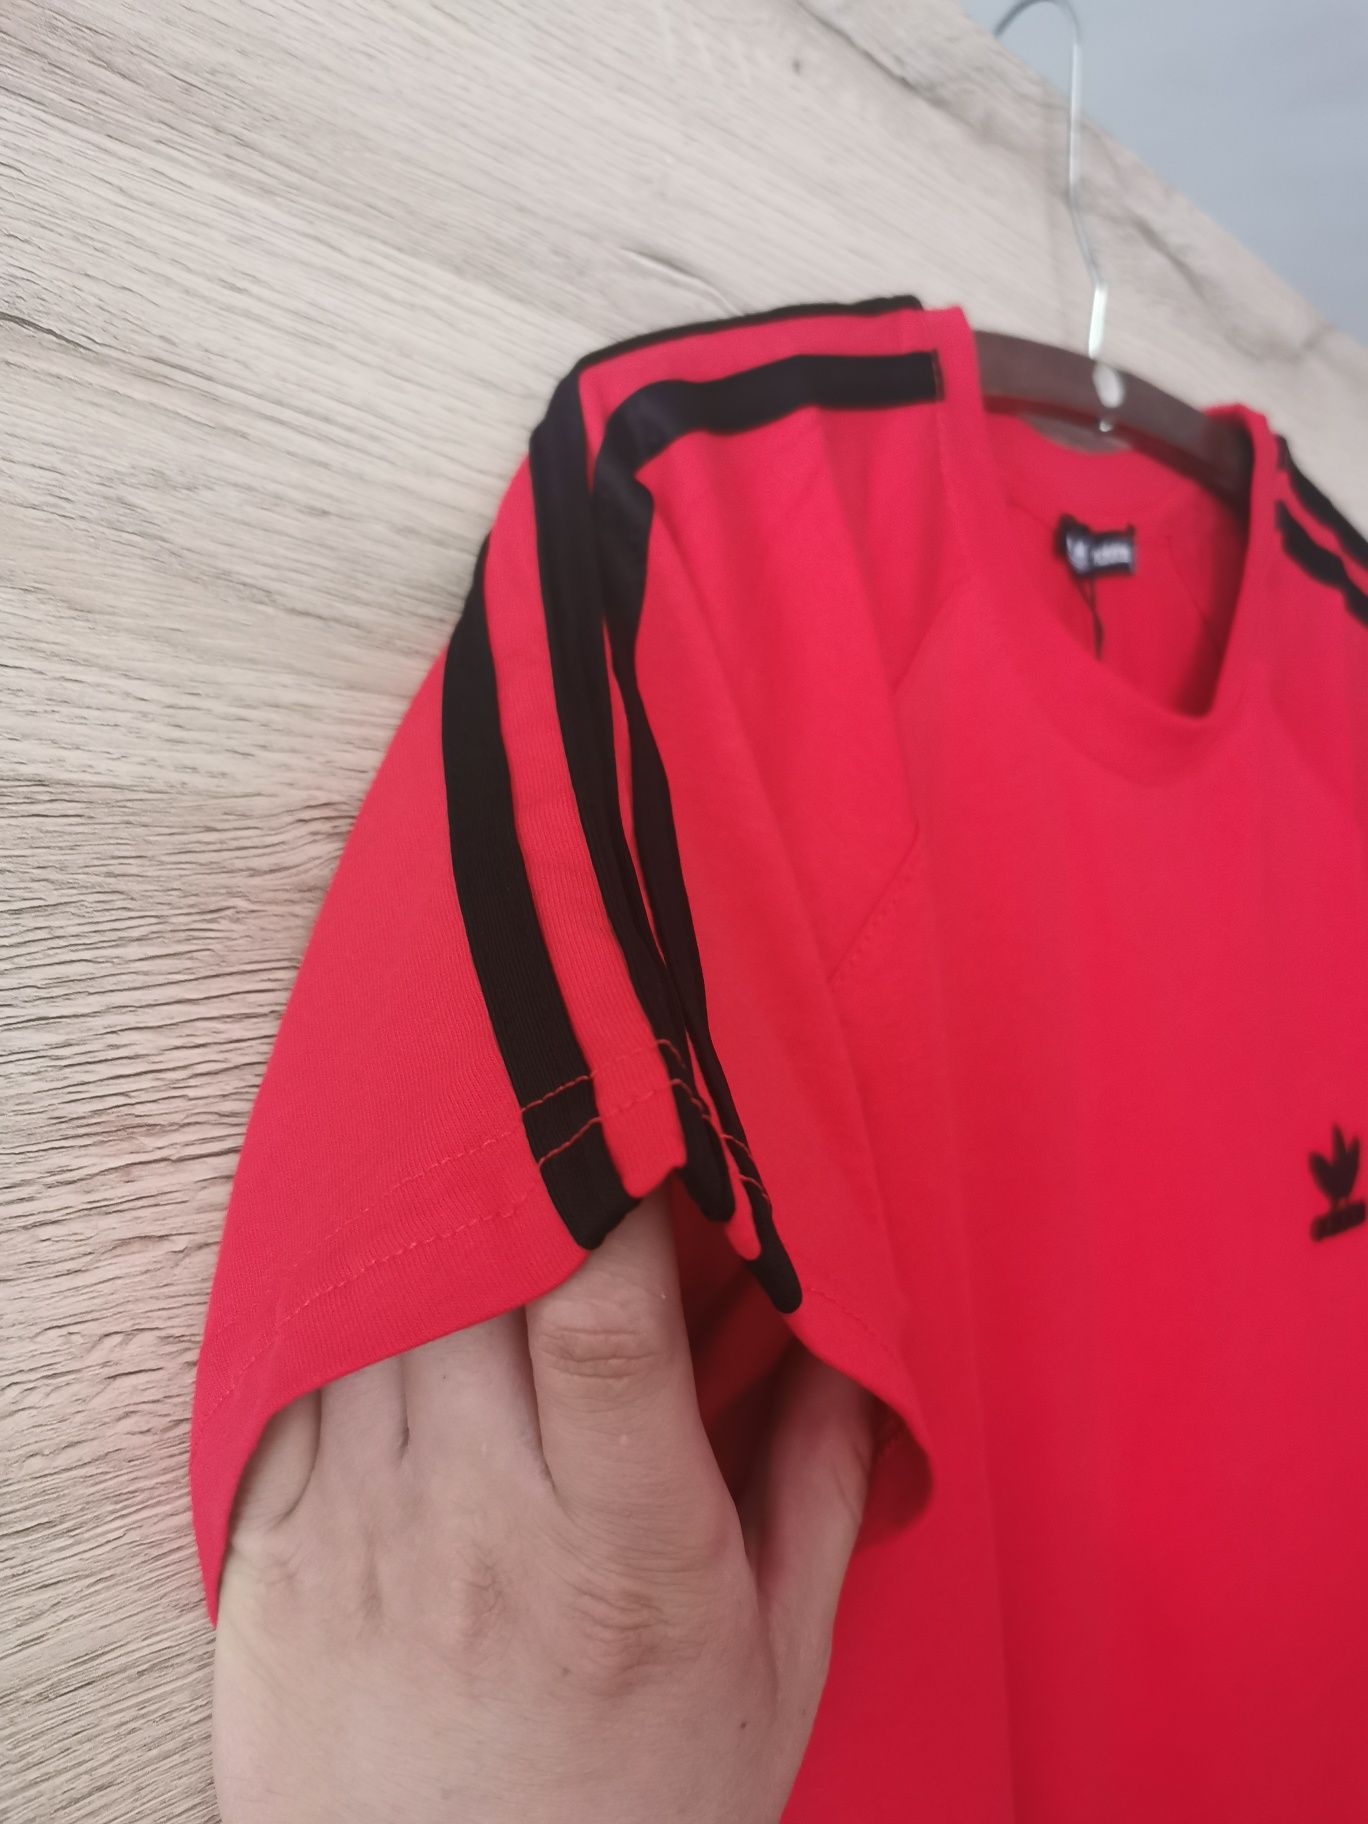 Nowa koszulka męska Adidas w kolorze czerwonym logo szyte z paskami